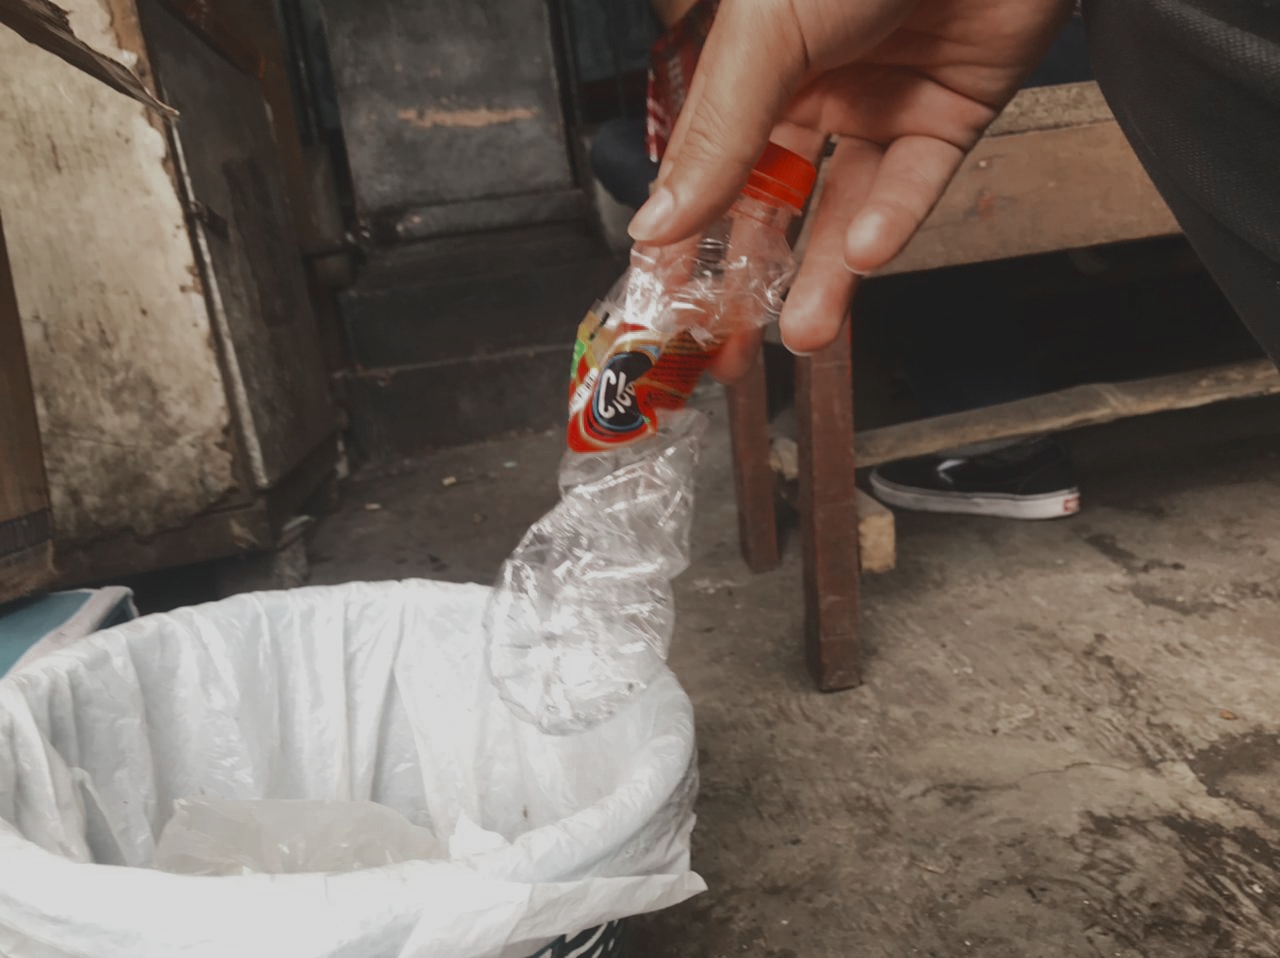 Wali Kota Malang Terus Kontrol, Kebijakan Penggunaan Plastik